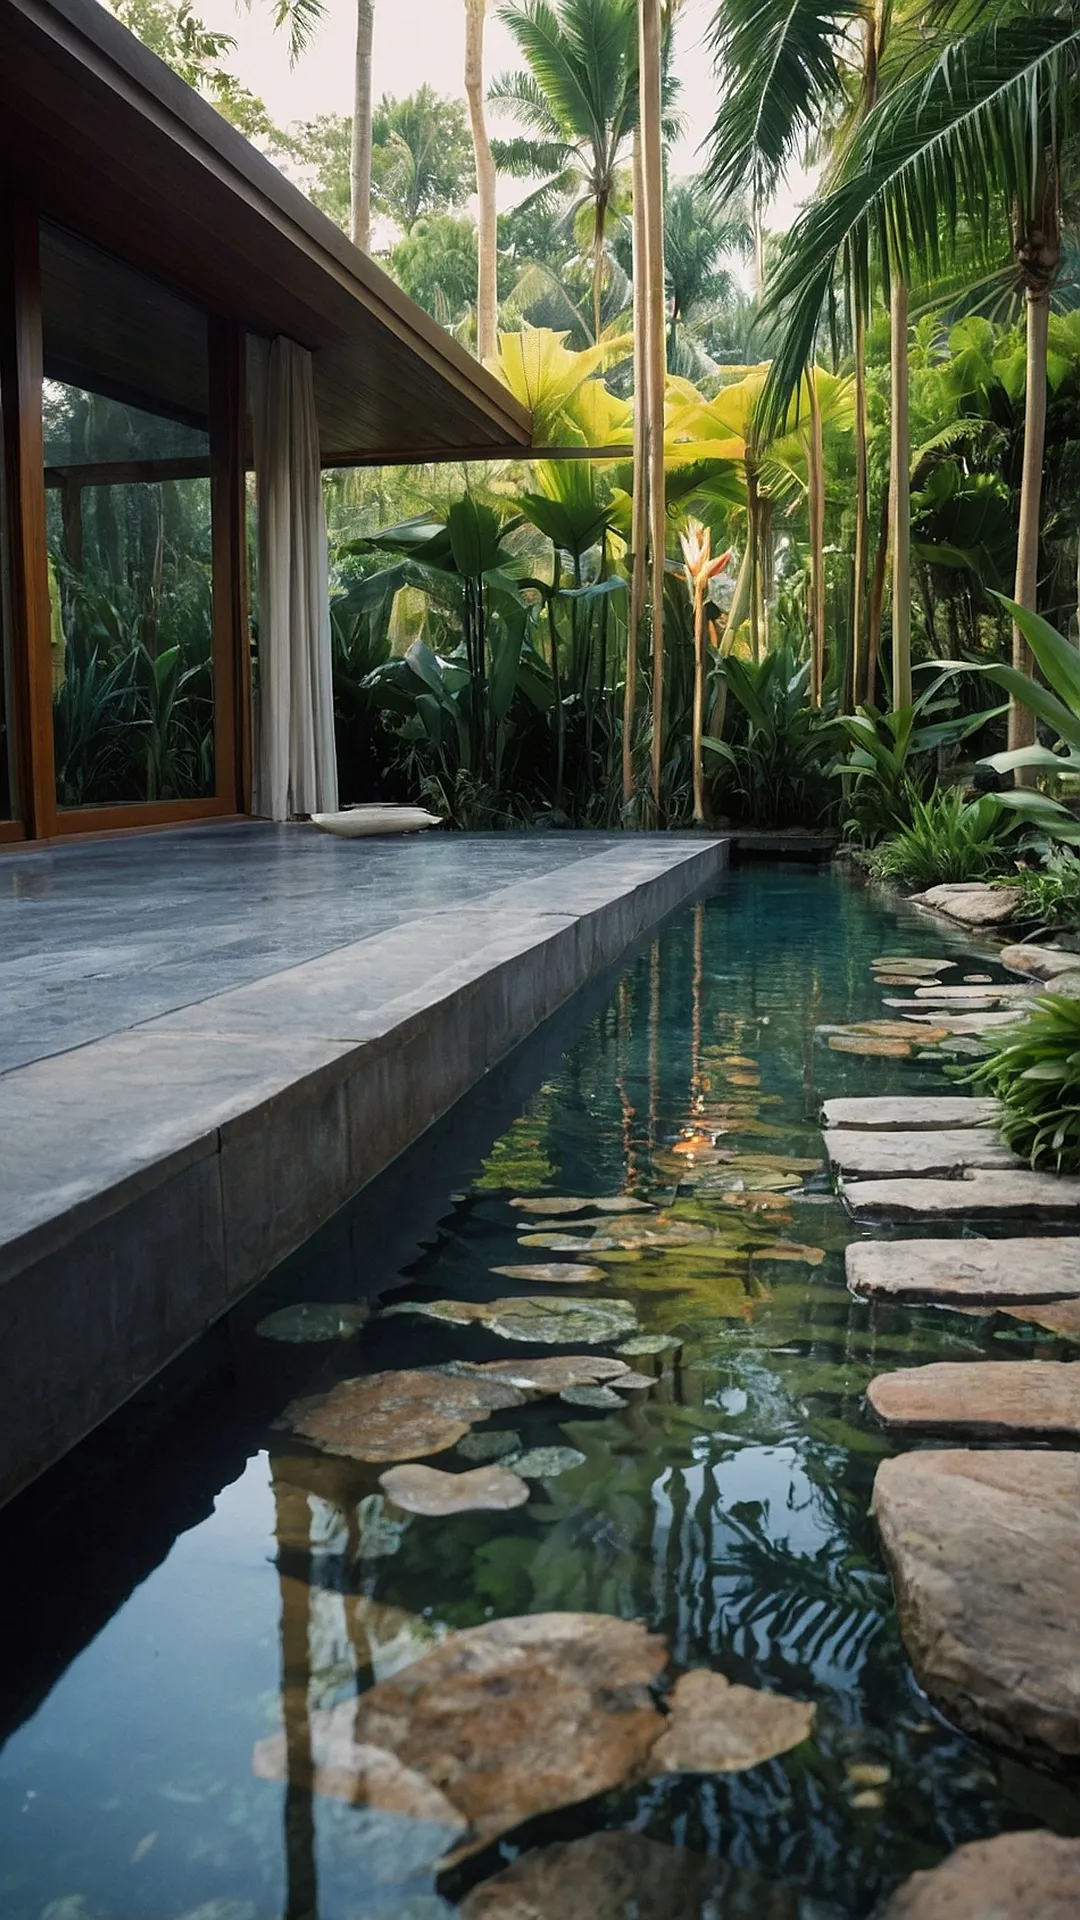 Frontyard Zen in the Tropics